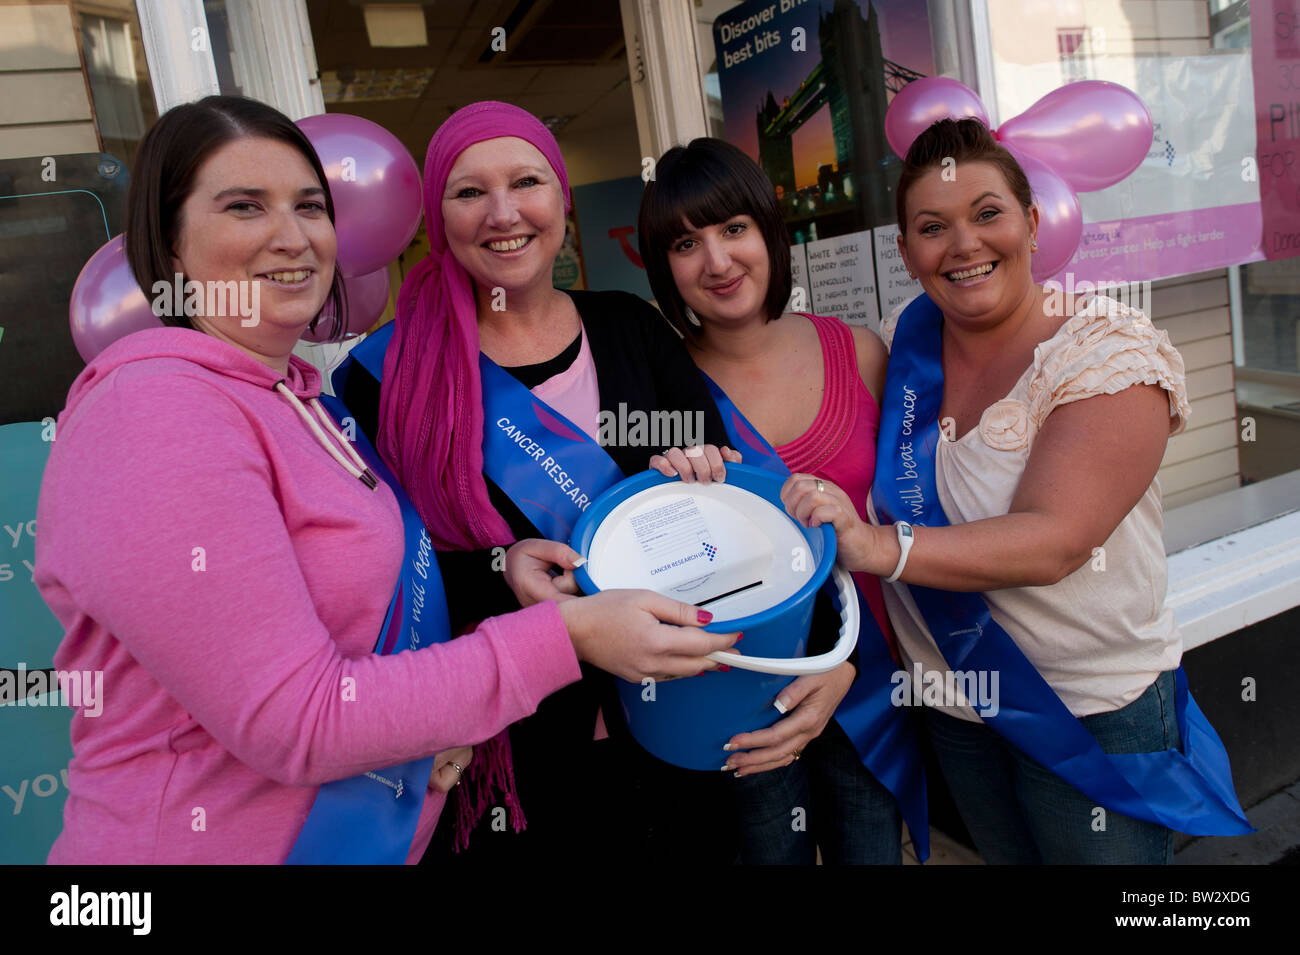 vier Frauen Shop Arbeiter freiwillige gekleidet in rosa sammeln Geld für die Krebsforschung, UK Stockfoto